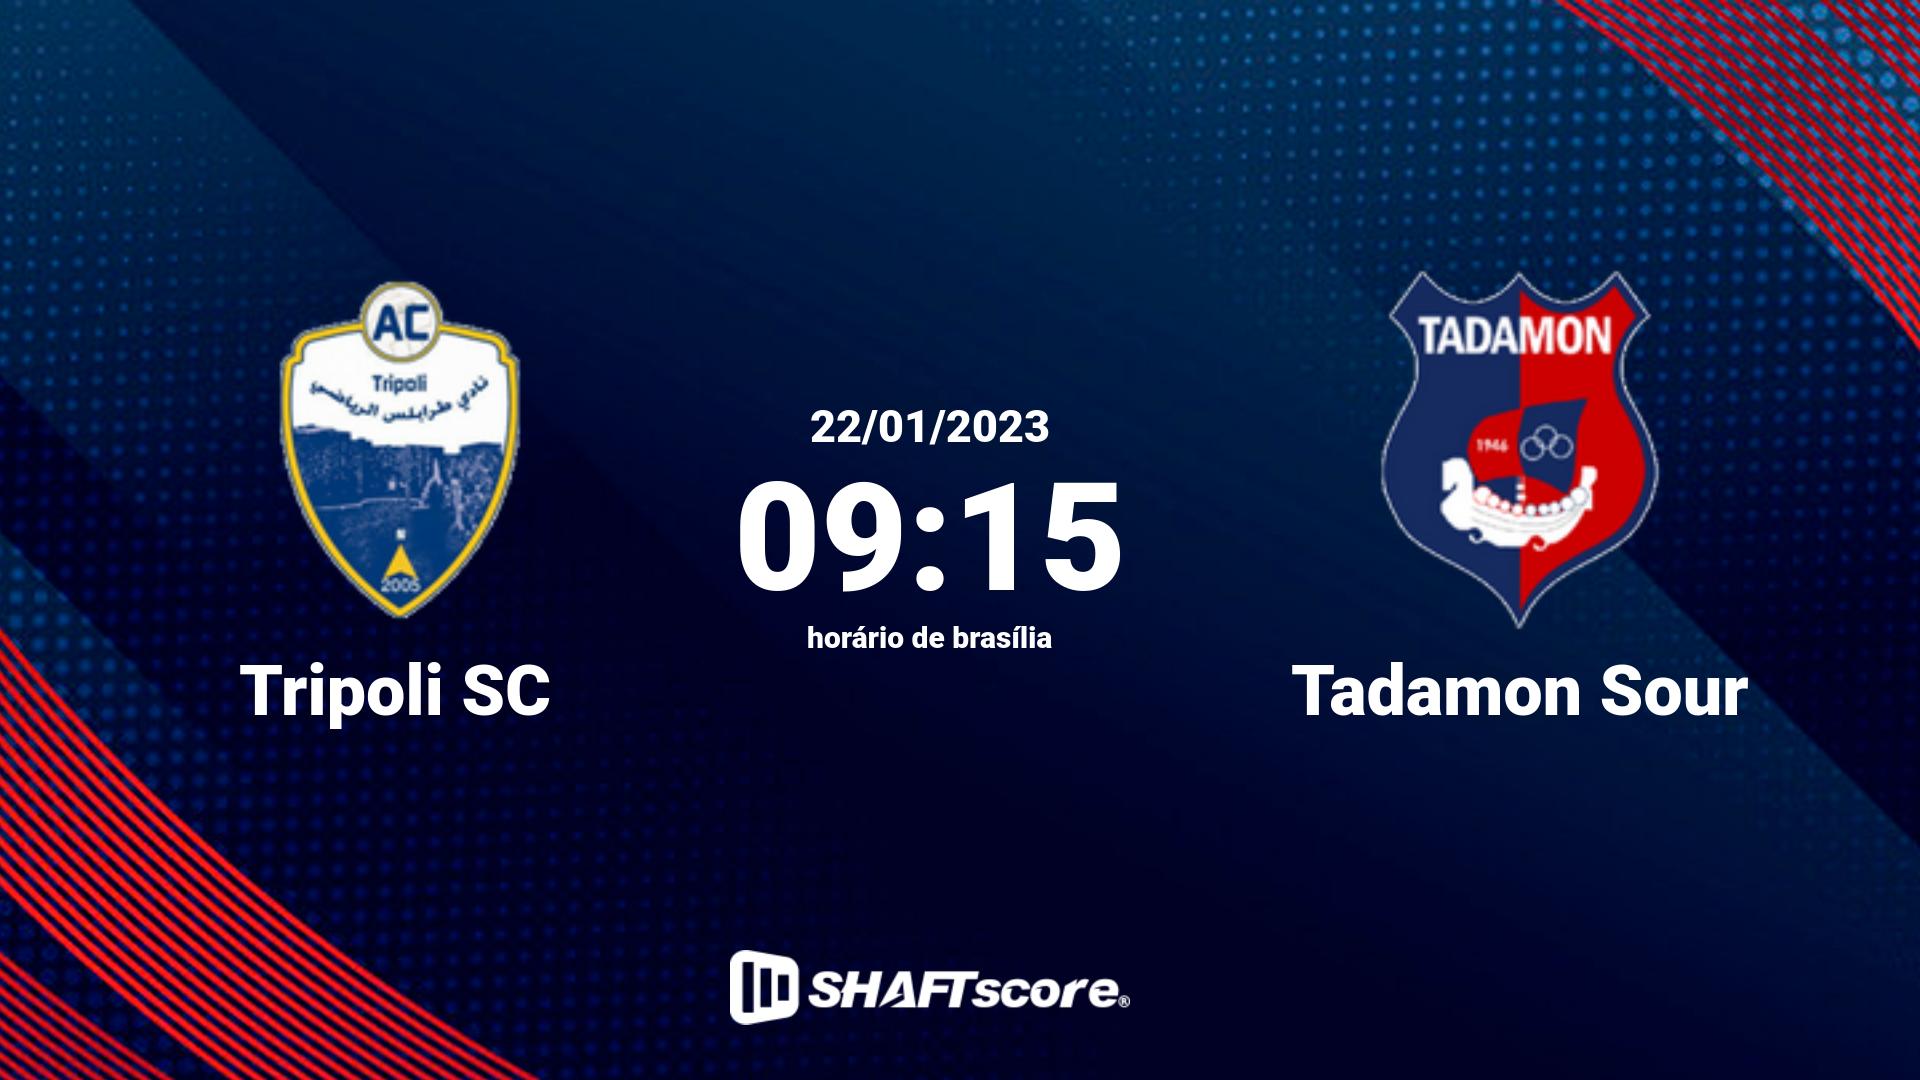 Estatísticas do jogo Tripoli SC vs Tadamon Sour 22.01 09:15